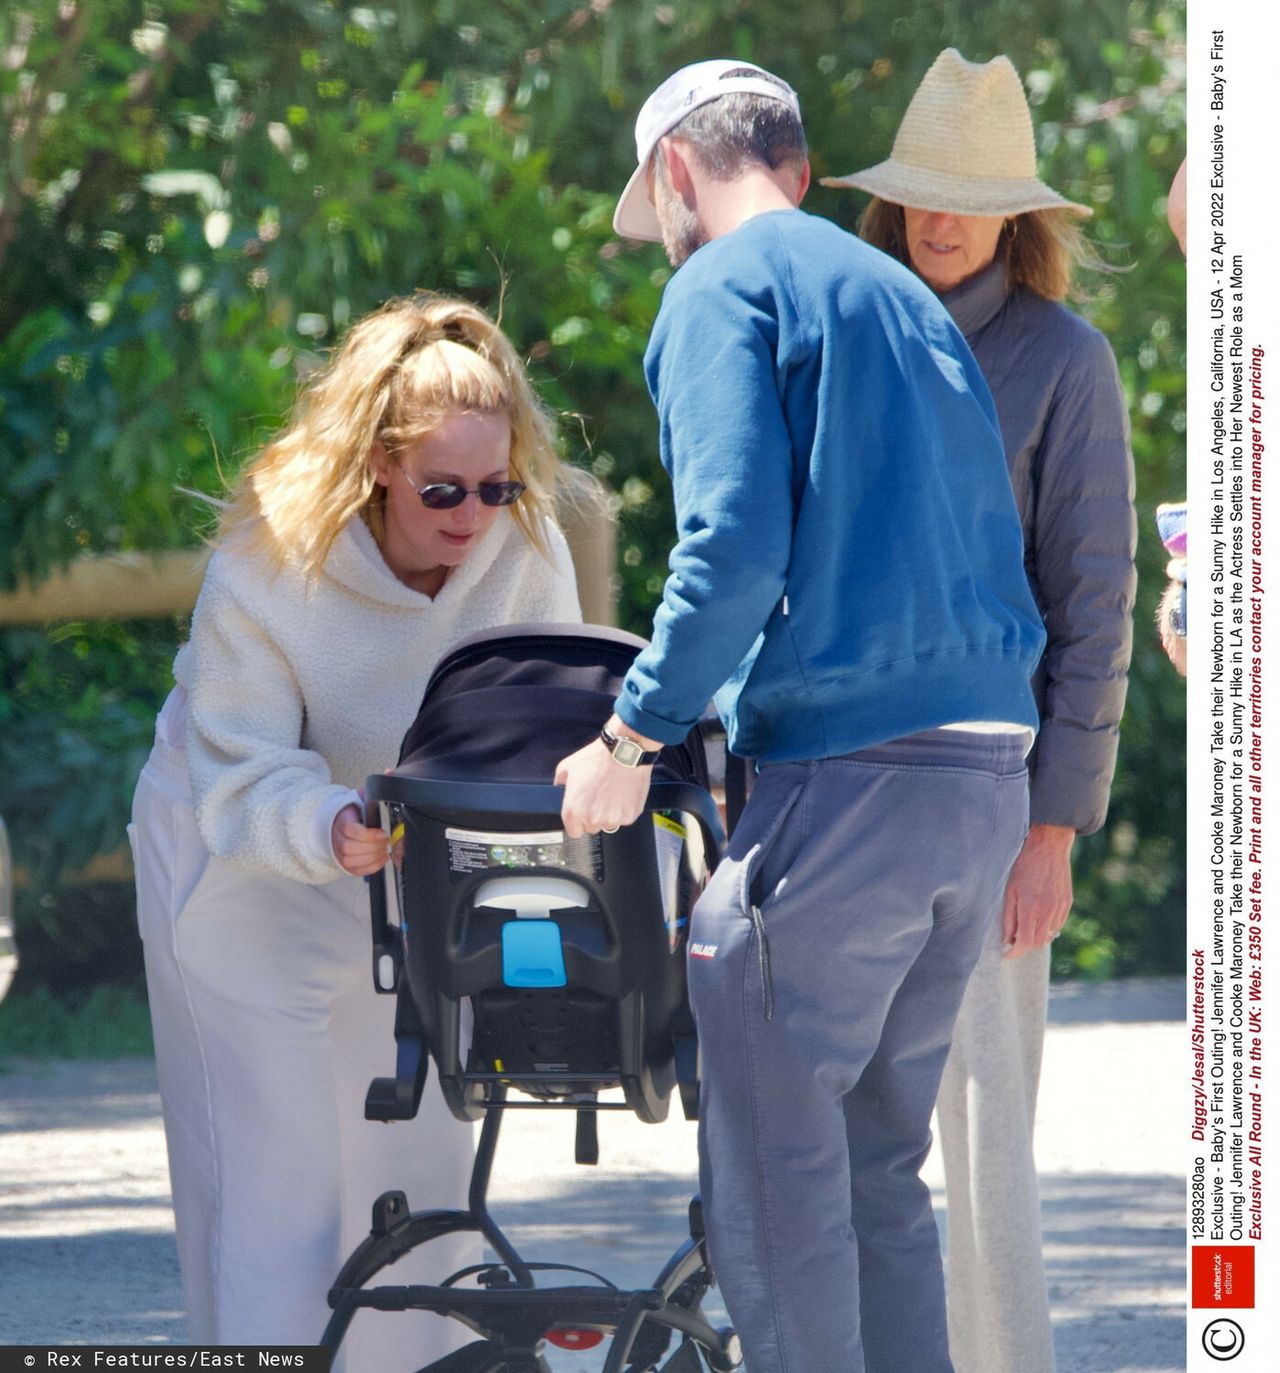 Jennifer Lawrence na rodzinnym spacerze z nowonarodzonym dzieckiem